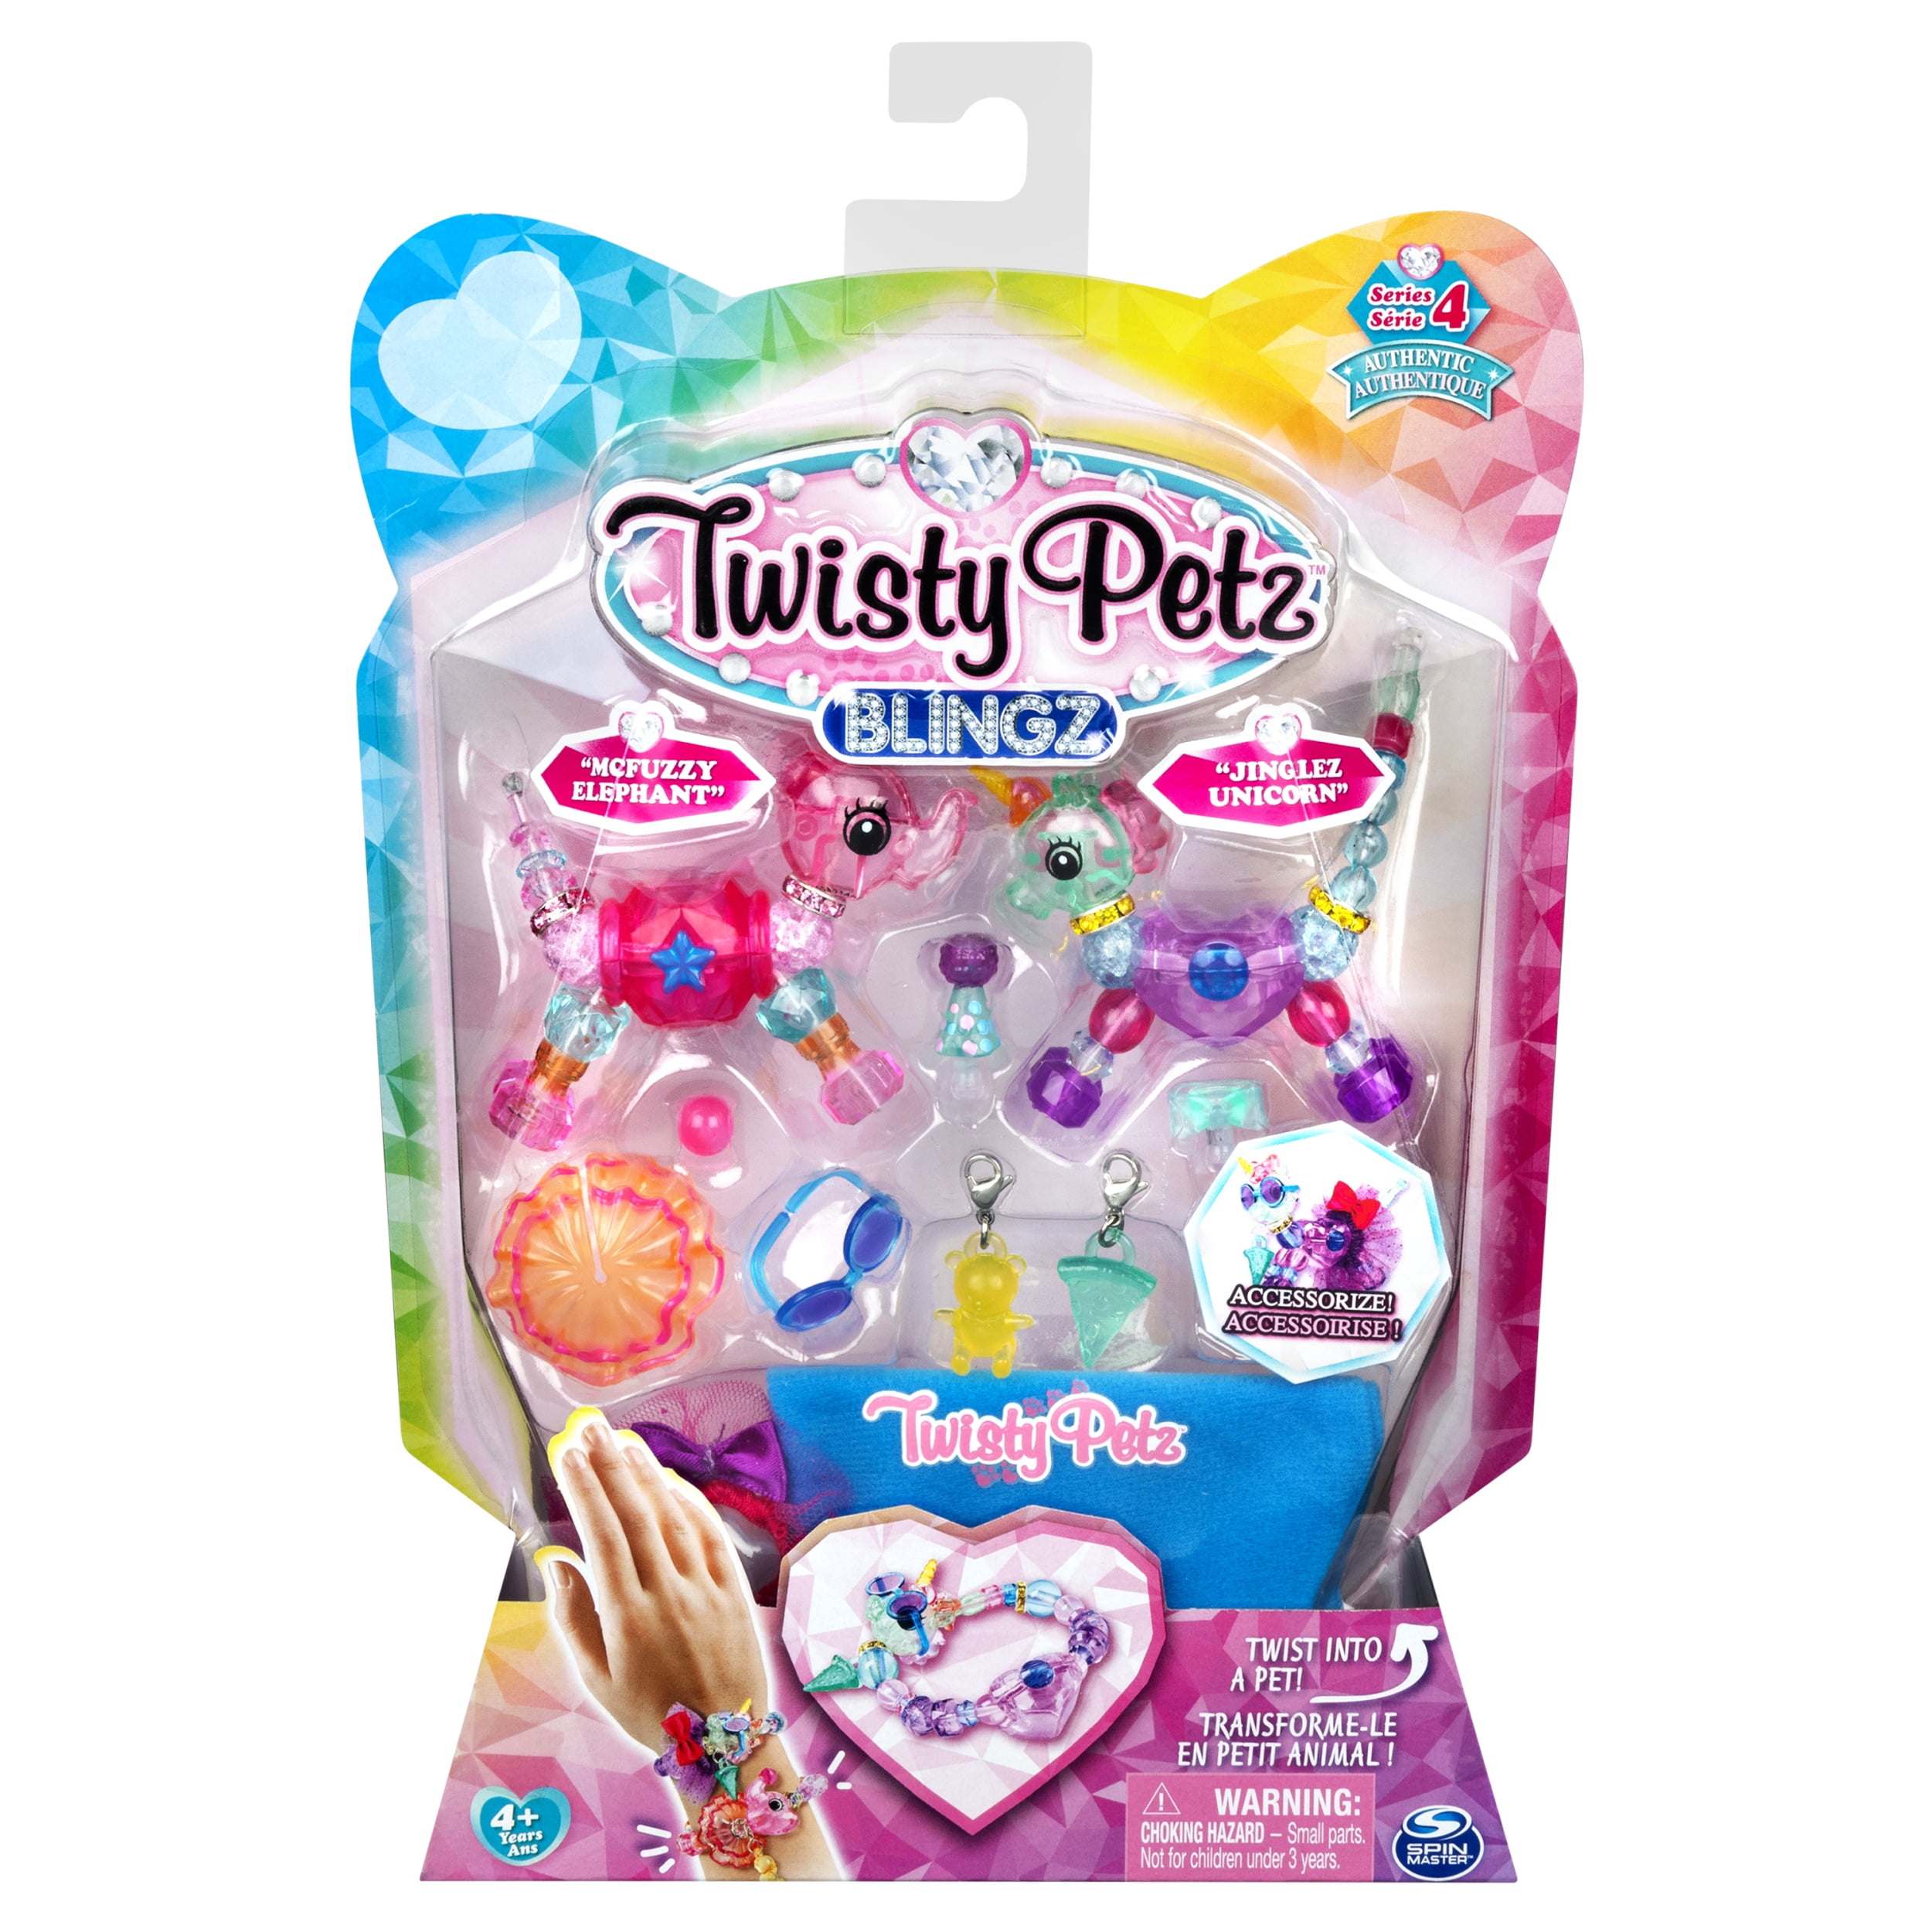 Twisty Petz Series 4 Blingz Starzie Elephant & Jinglez Unicorn Customizable NIB 